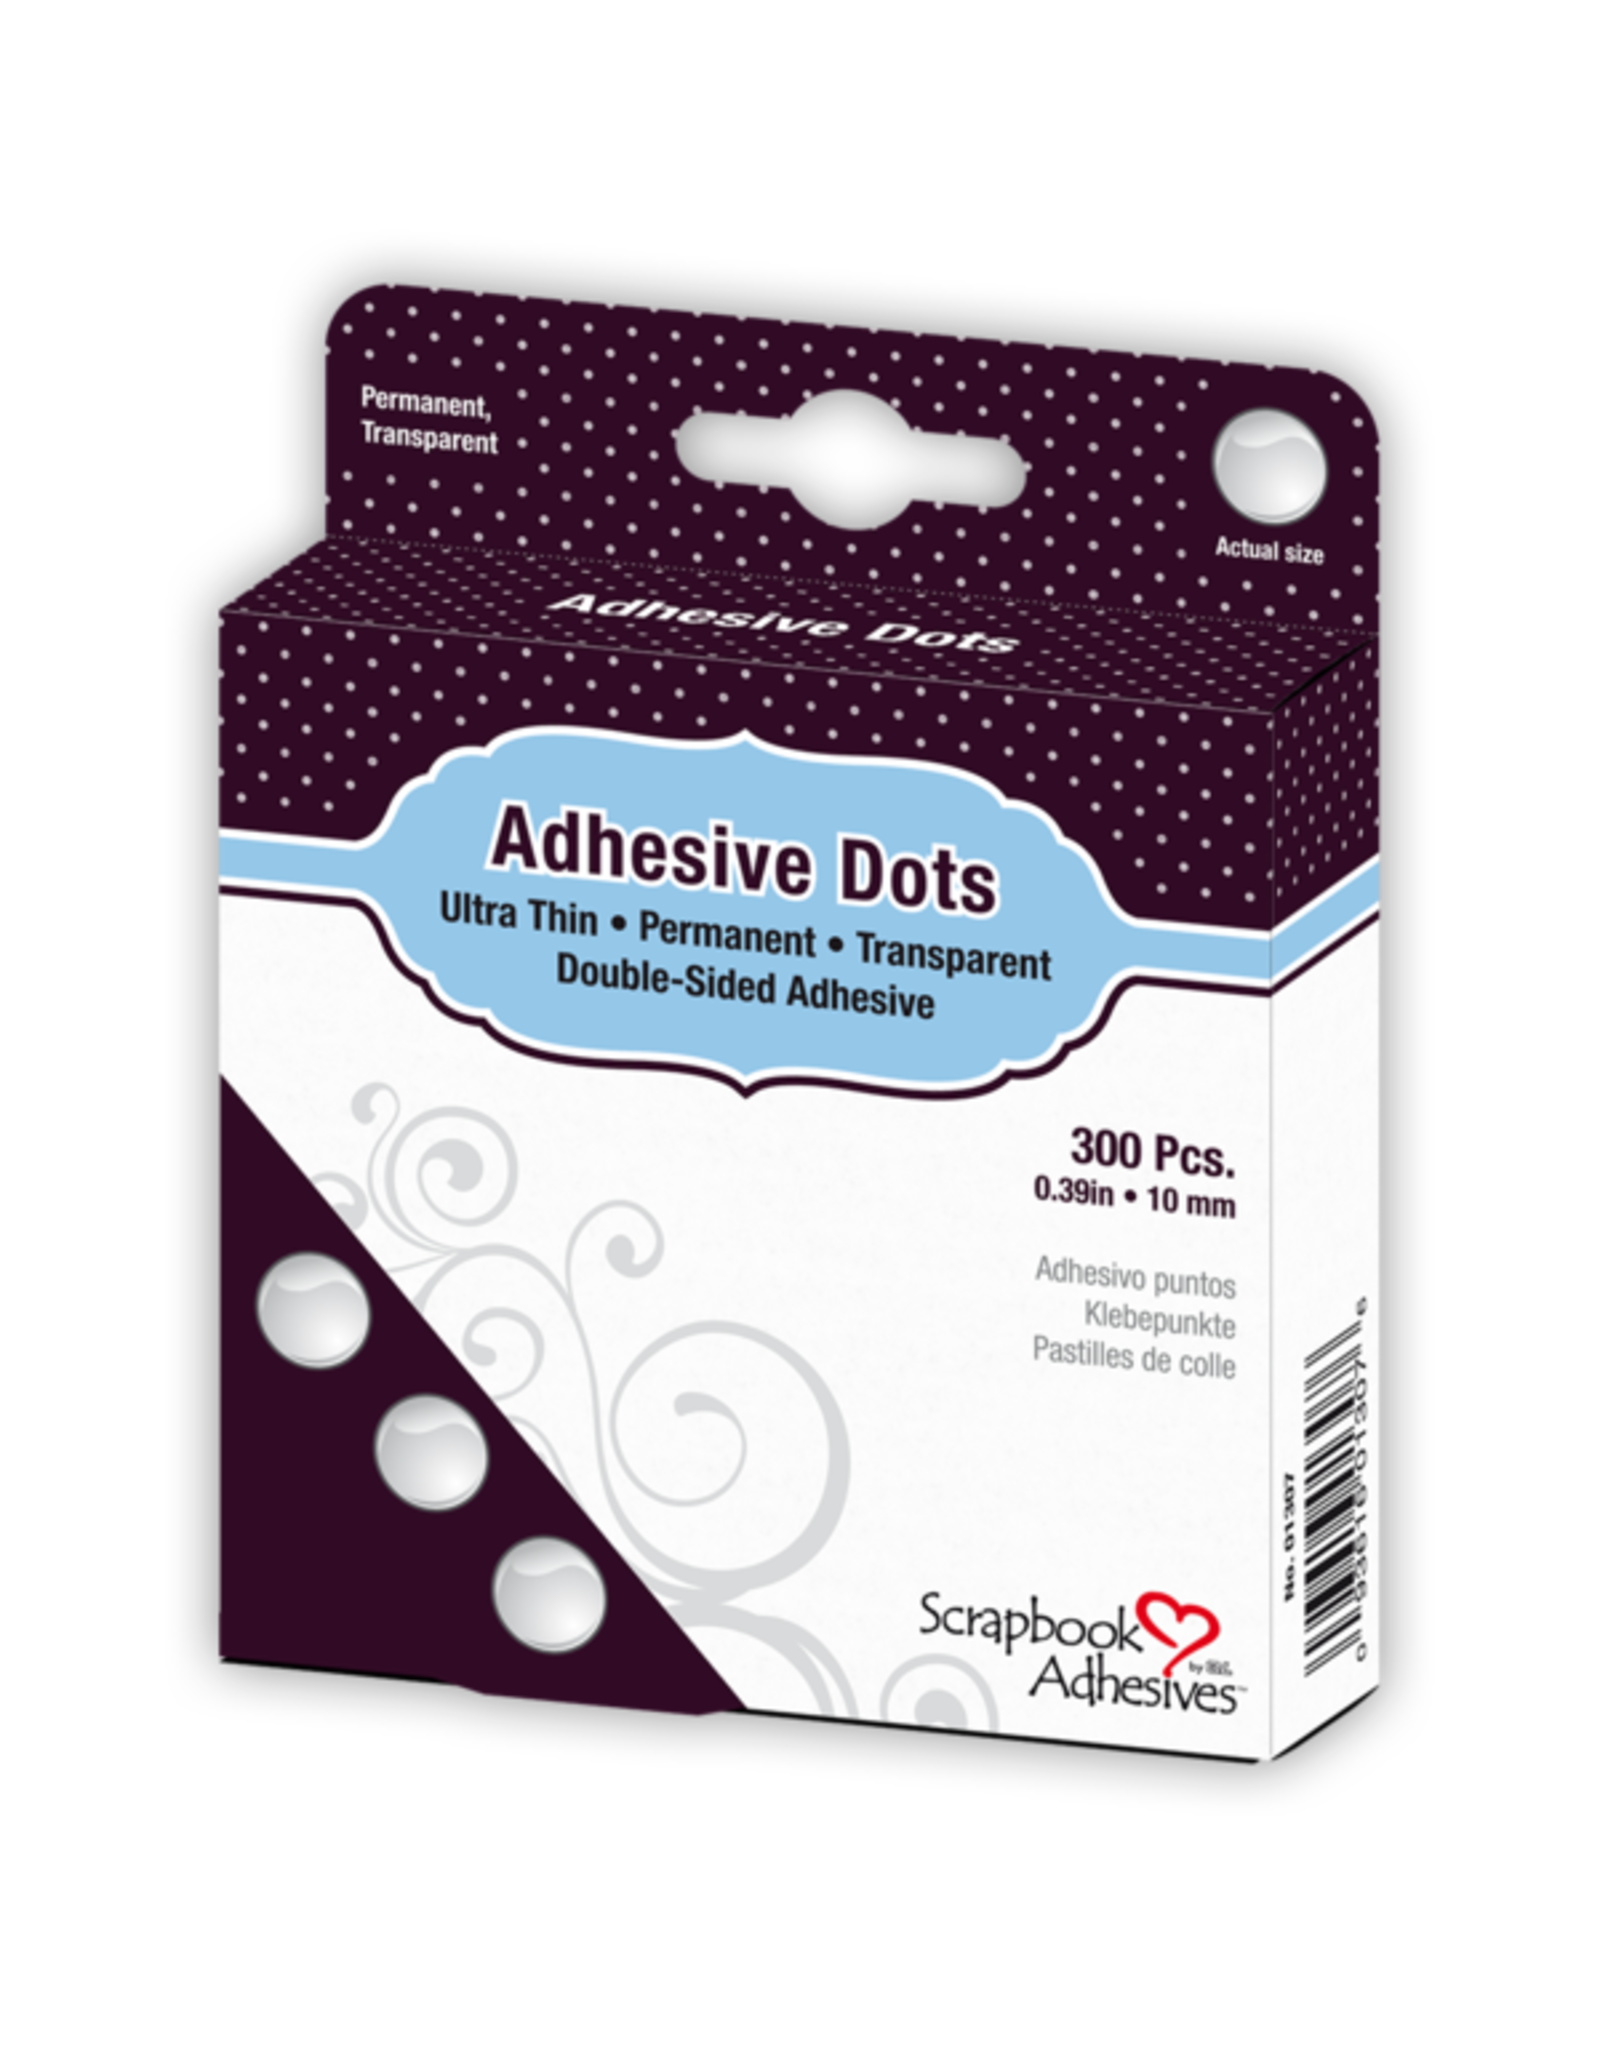 Scrapbook Adhesives Adhesive Dots  Ultra Thin